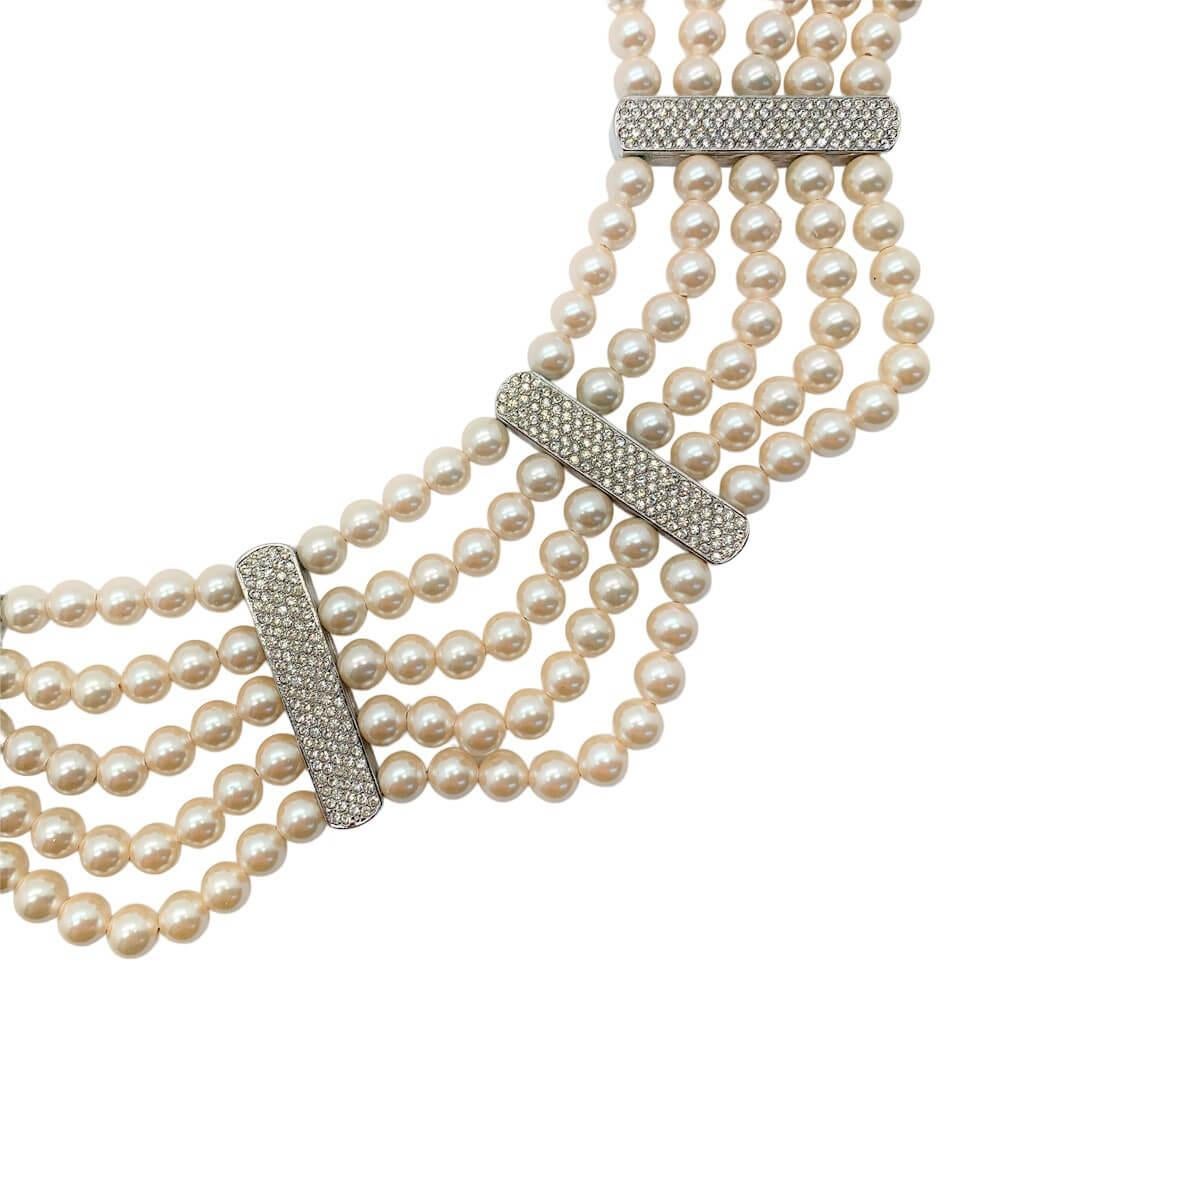 Un collier de perles Dior vintage des années 1980 vraiment spécial, avec des perles d'une couleur incroyable. Les cinq rangs de perles simulées en verre lustré sont ponctués de stations de cristal contrastantes. En somme, cela donne la sensation